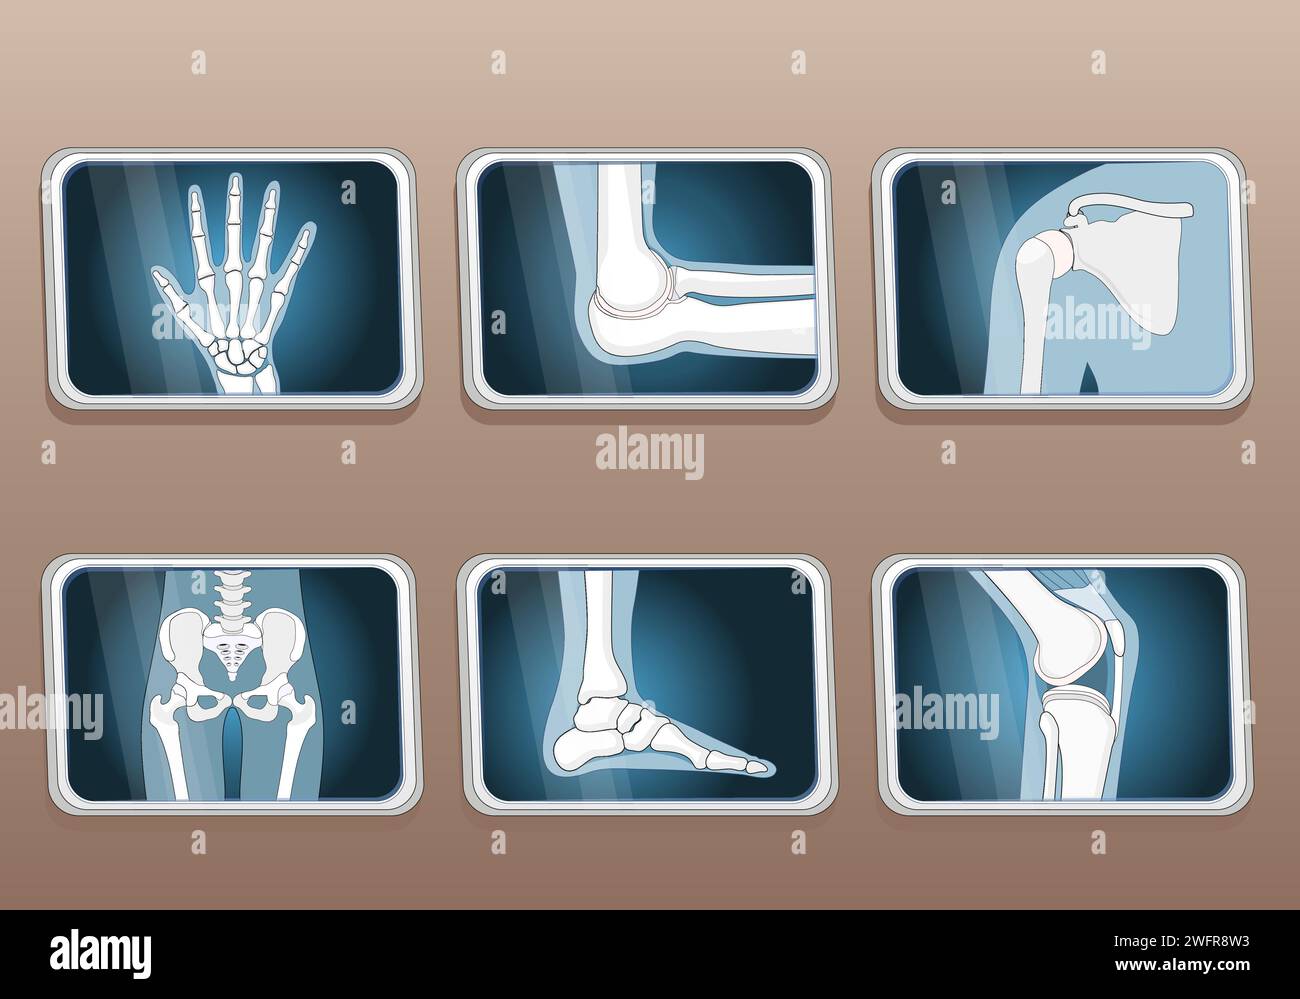 Arten von Verbindungen. Knie, Ellenbogen, Handgelenk, Hüfte, Schultergelenke und Fußgelenke. Symbole festlegen. Röntgenbild. Abbildung des isometrischen flachen Vektors. Stock Vektor